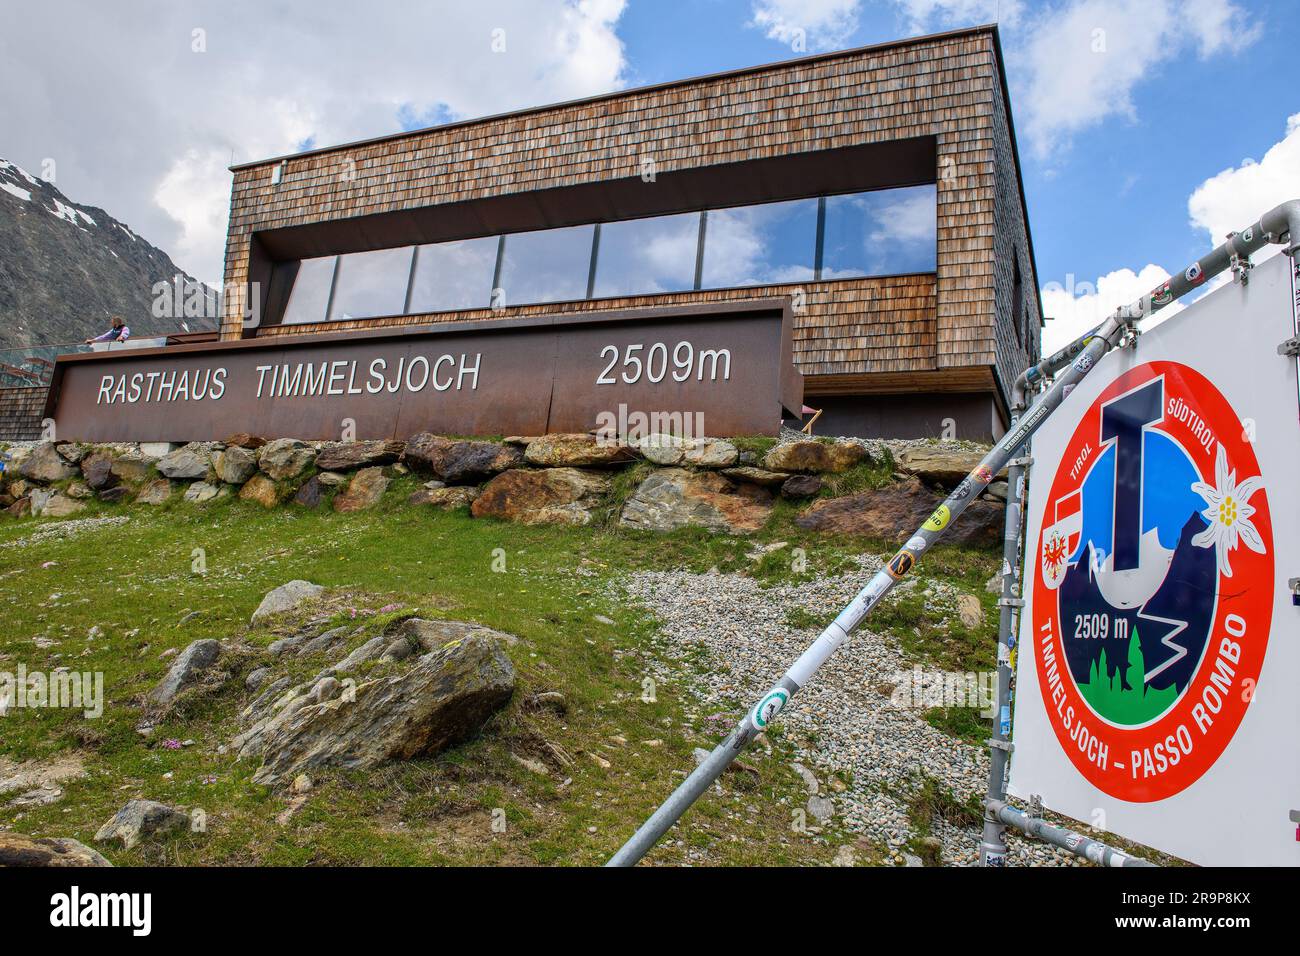 Rasthaus Timmelsjoch auf Passhöhe von 2509 Meter hohes Timmelsjoch Passo Rombo, Rechts Schild mit Timmelsjoch-logo, Tirol, Alpen, Österreich, Europa Banque D'Images